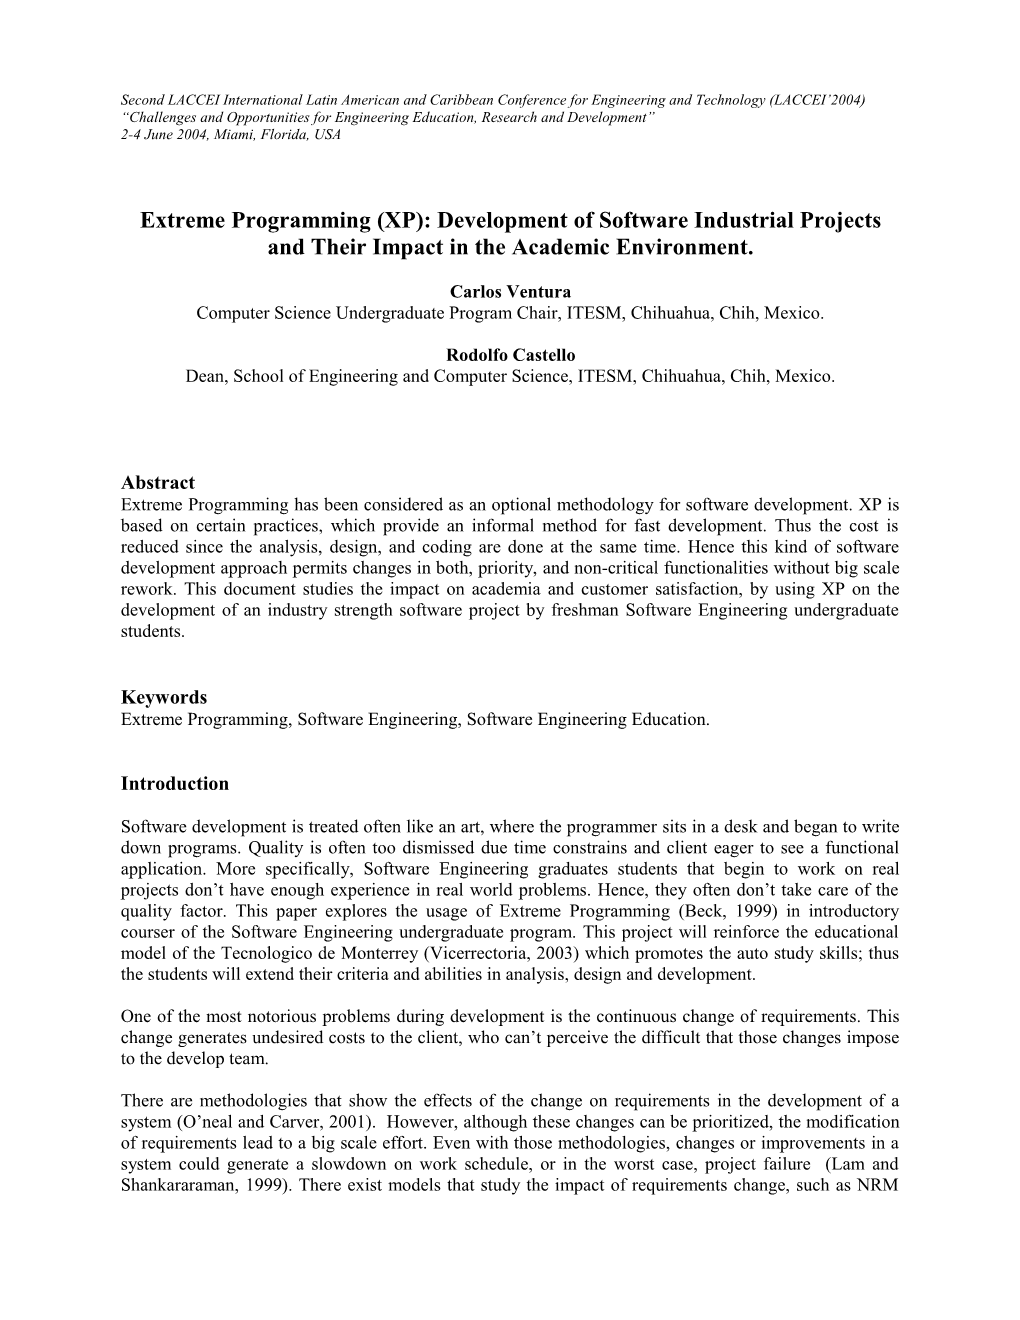 Programación Extrema (XP): Impacto Académico Dentro Del Desarrollo De Proyectos Industriales